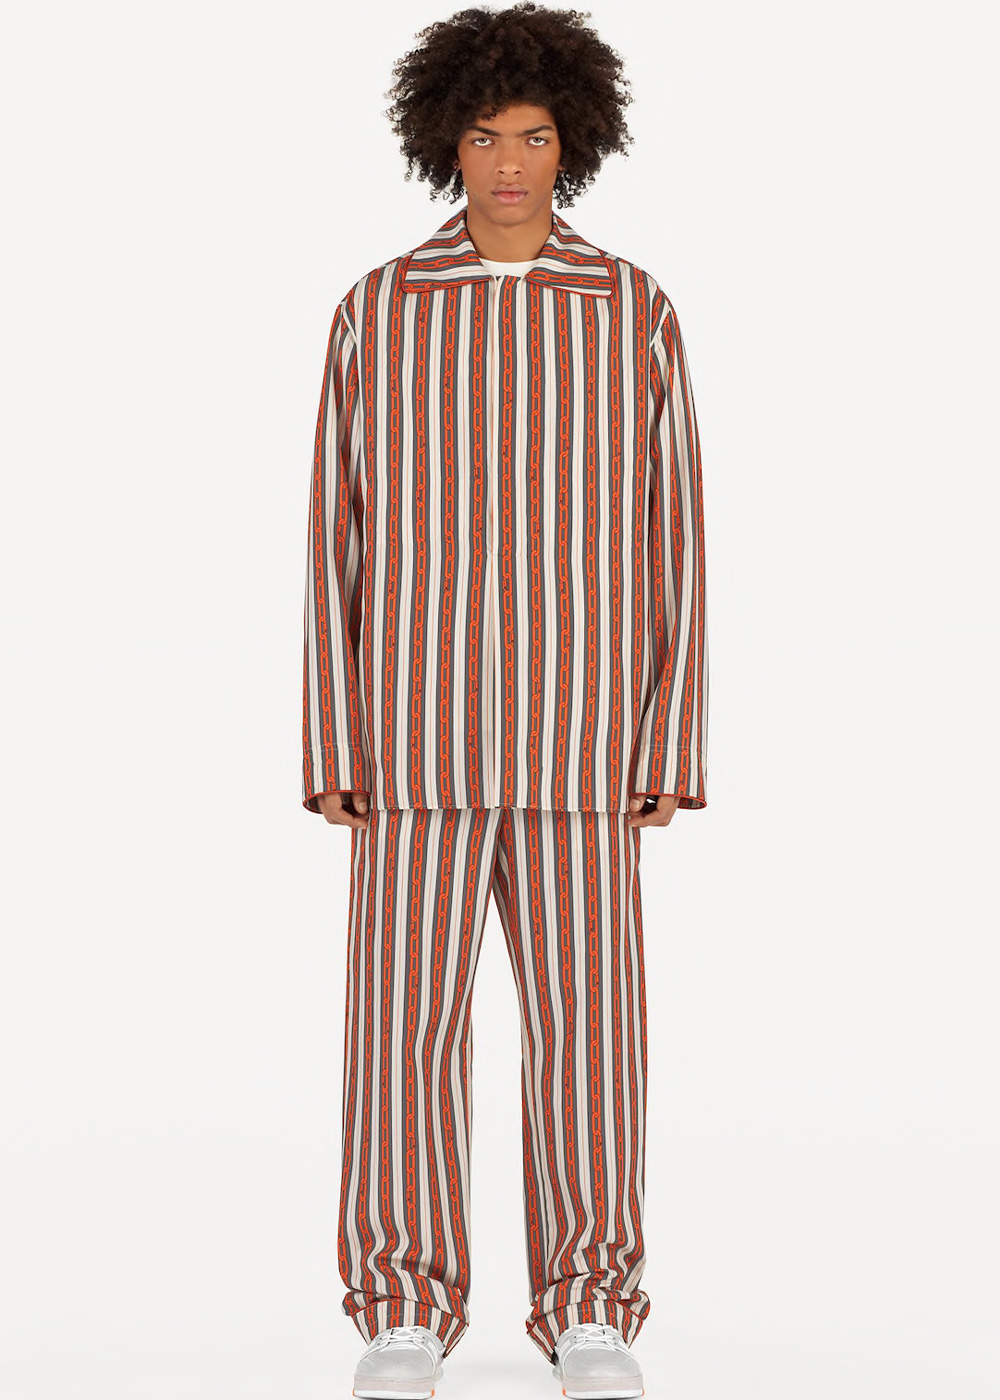 louis vuitton inspired pyjamas